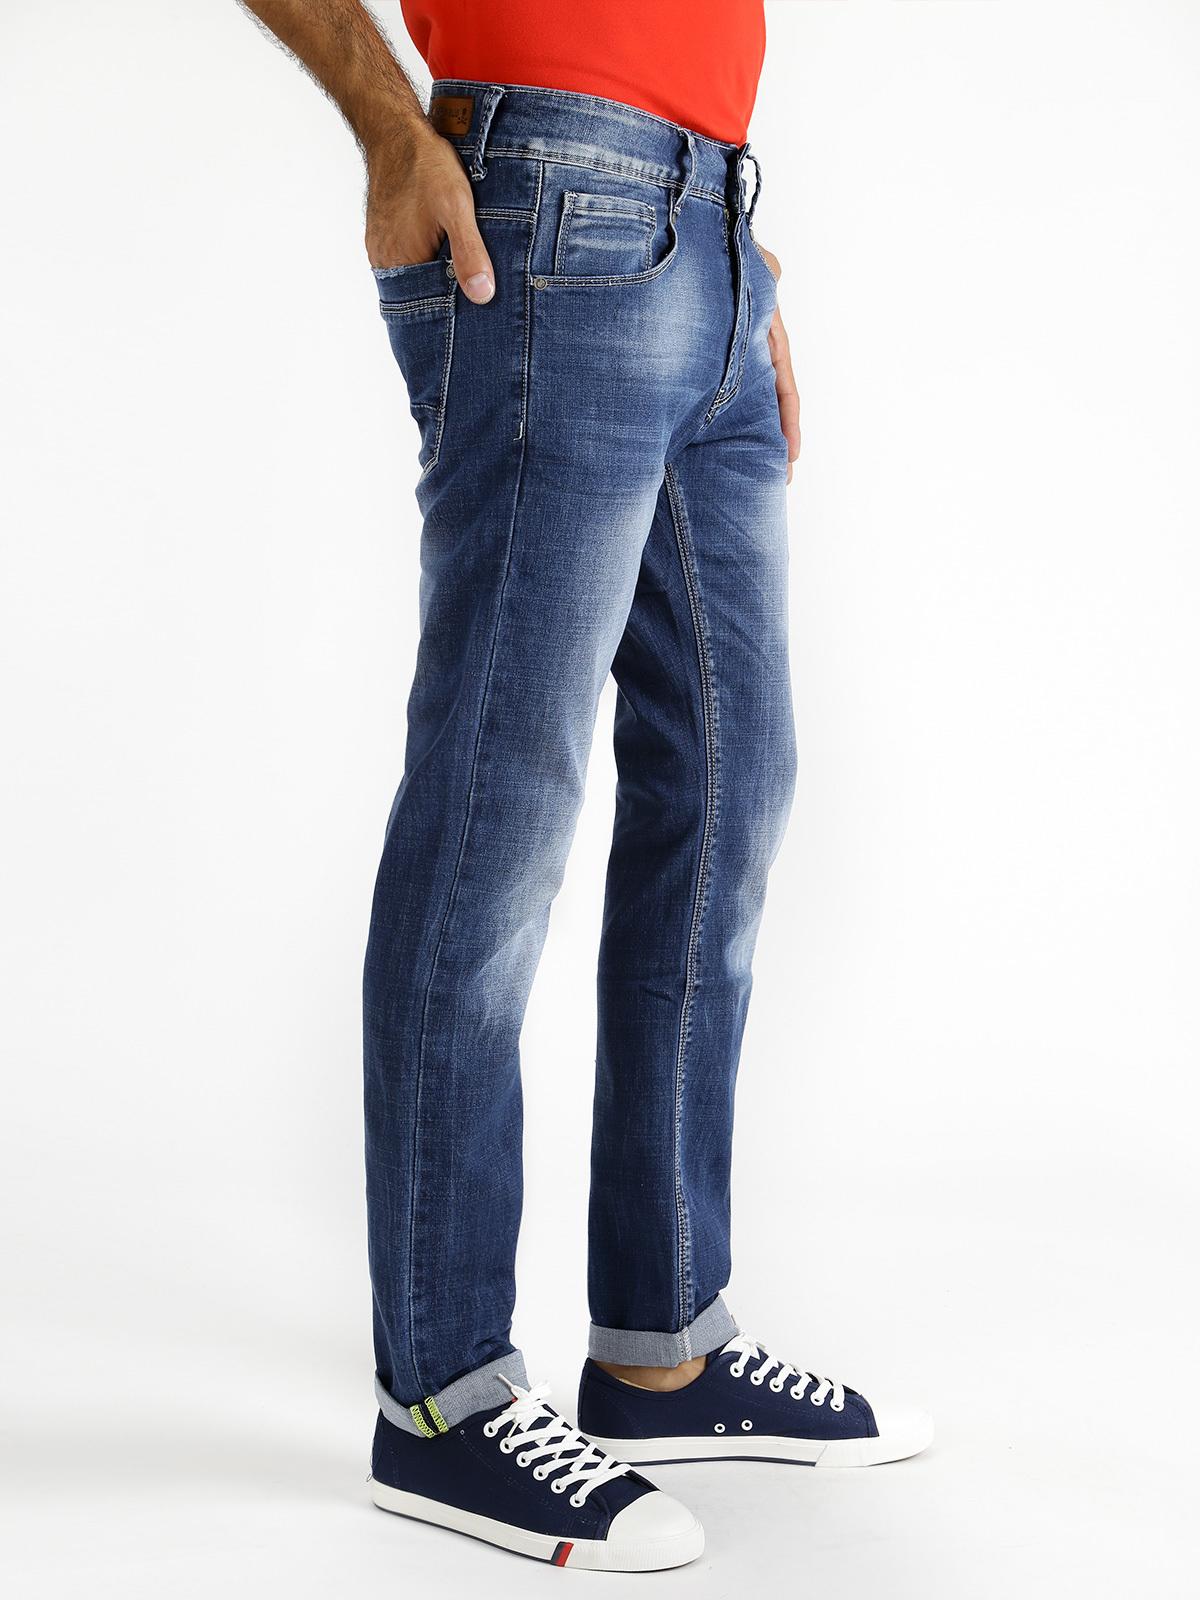 Zero Blu Jeans in cotone modello 5 tasche - regular fit ...